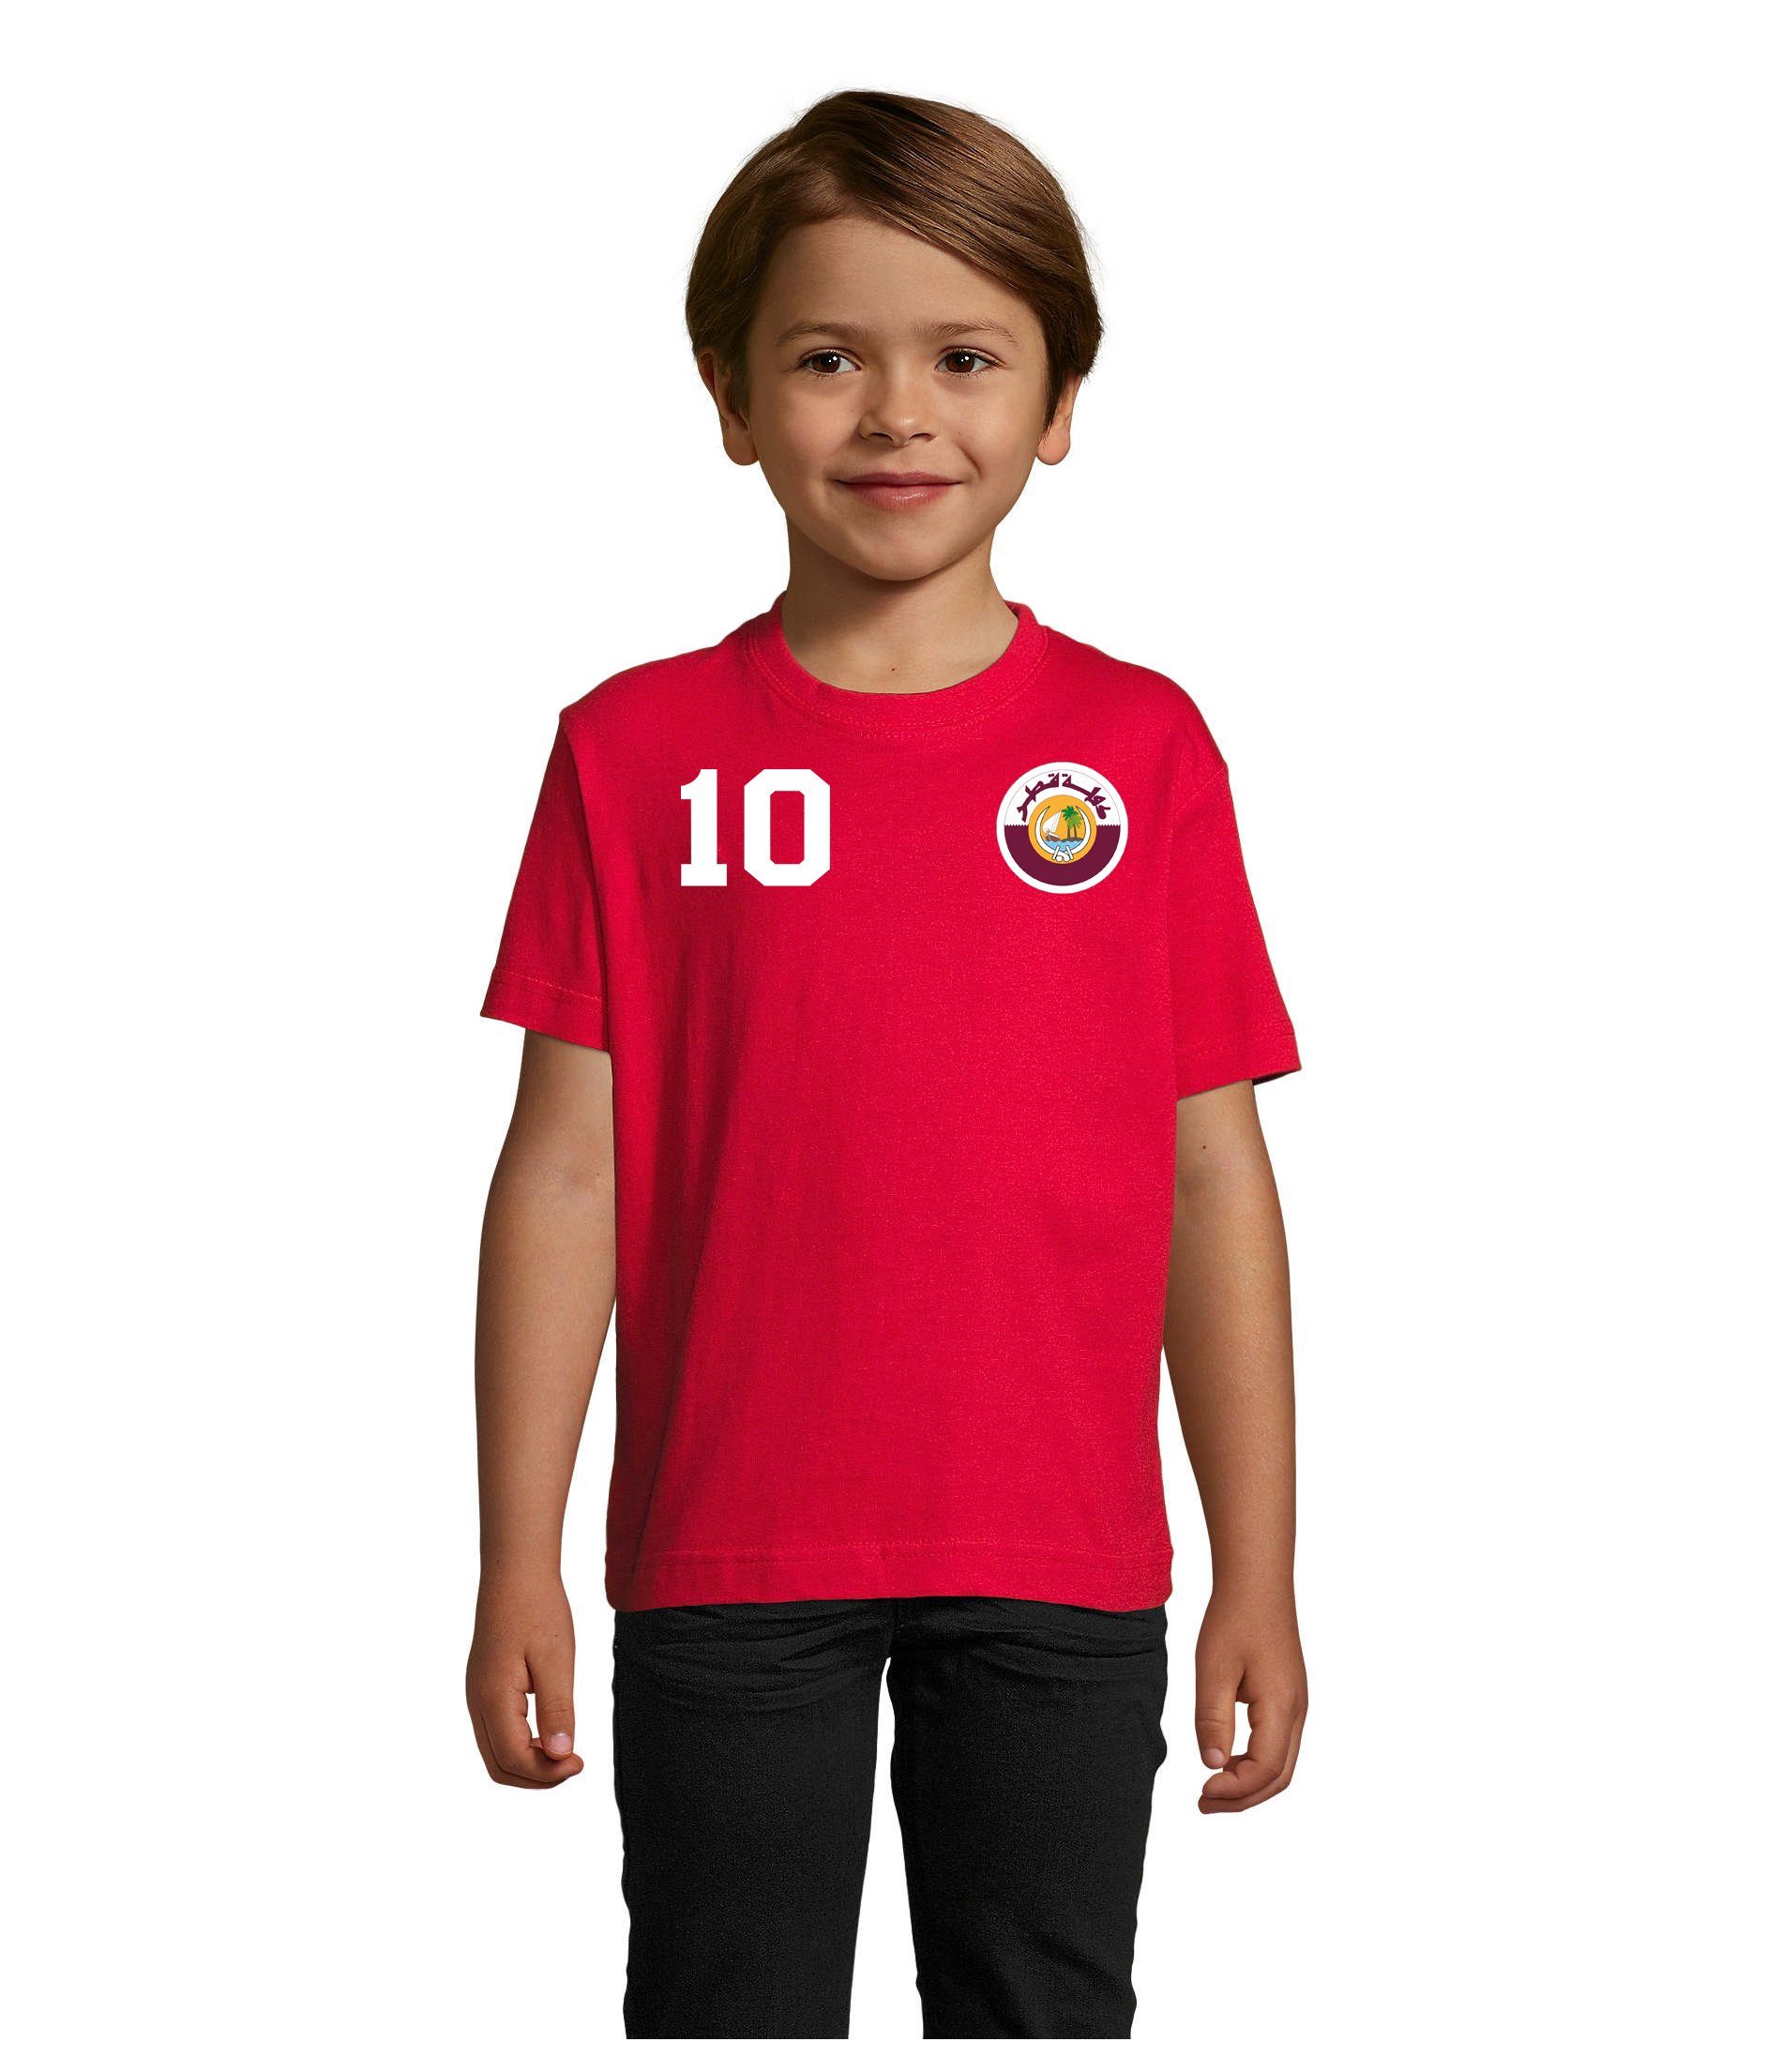 Trikot Fußball Qatar Katar Blondie Kinder & Weltmeister WM Brownie Sport T-Shirt